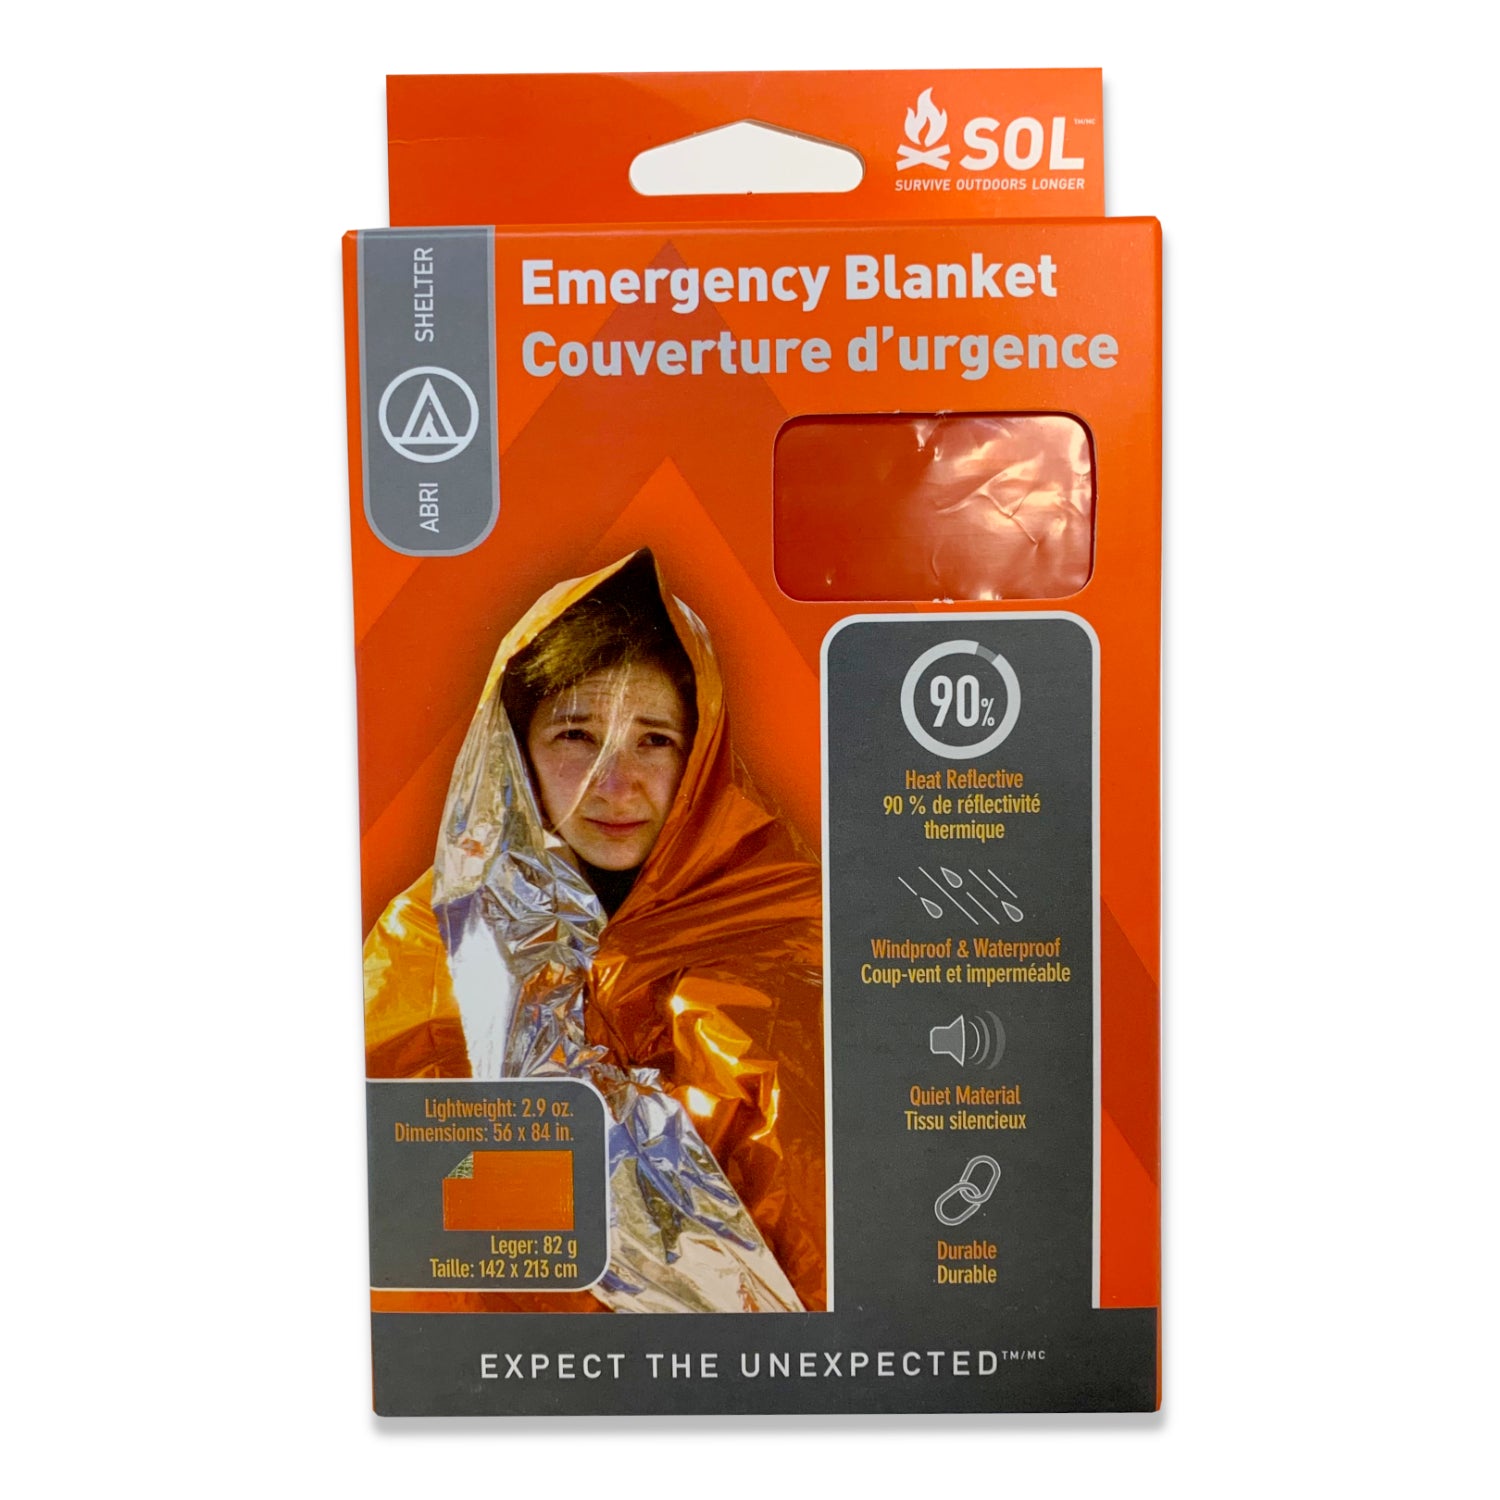 SOL Emergency Blanket, shown in packaging